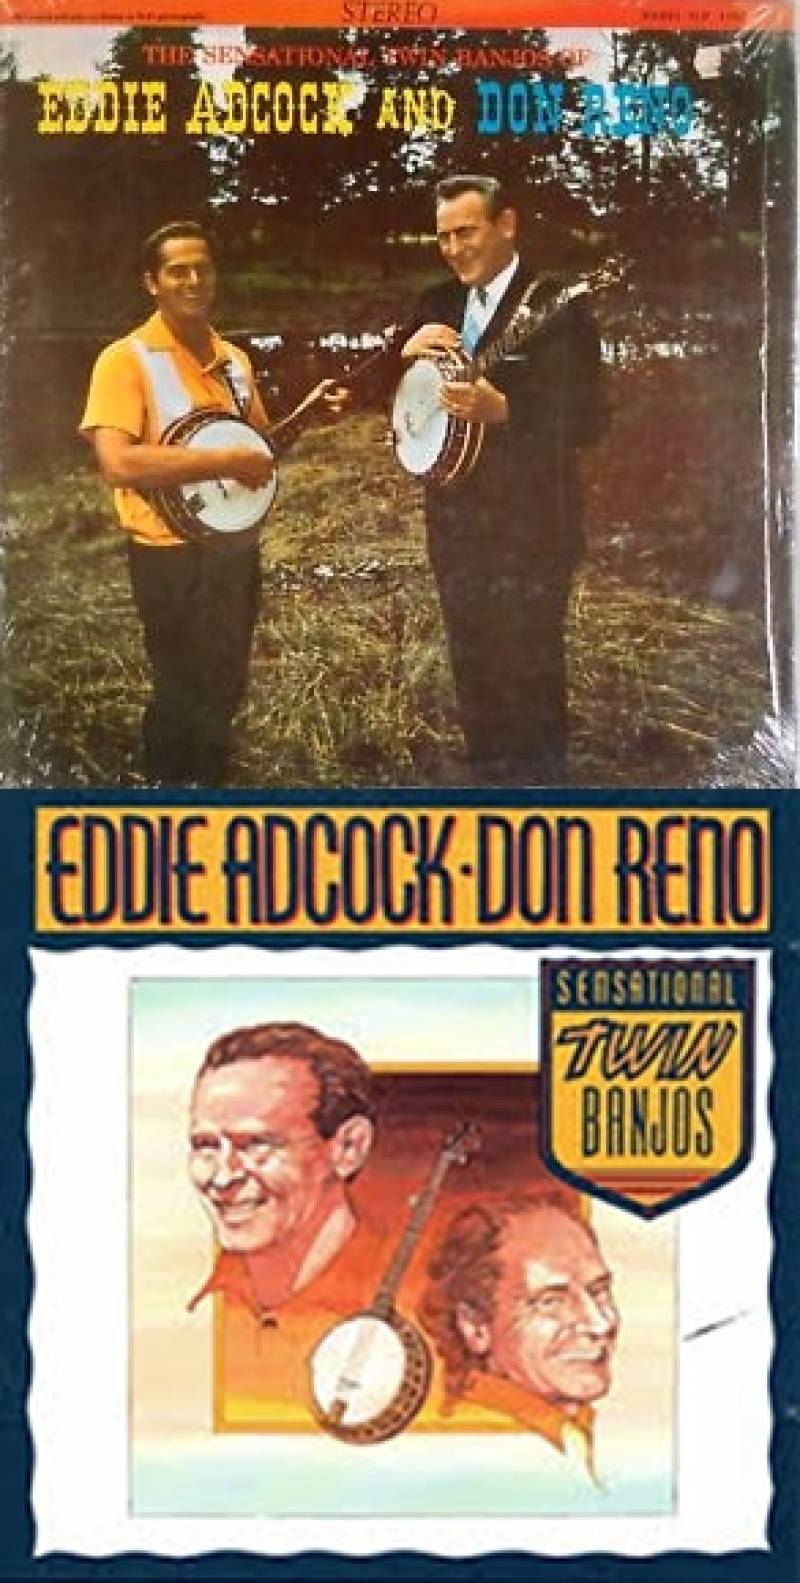 Eddie Adcock & Don Reno.